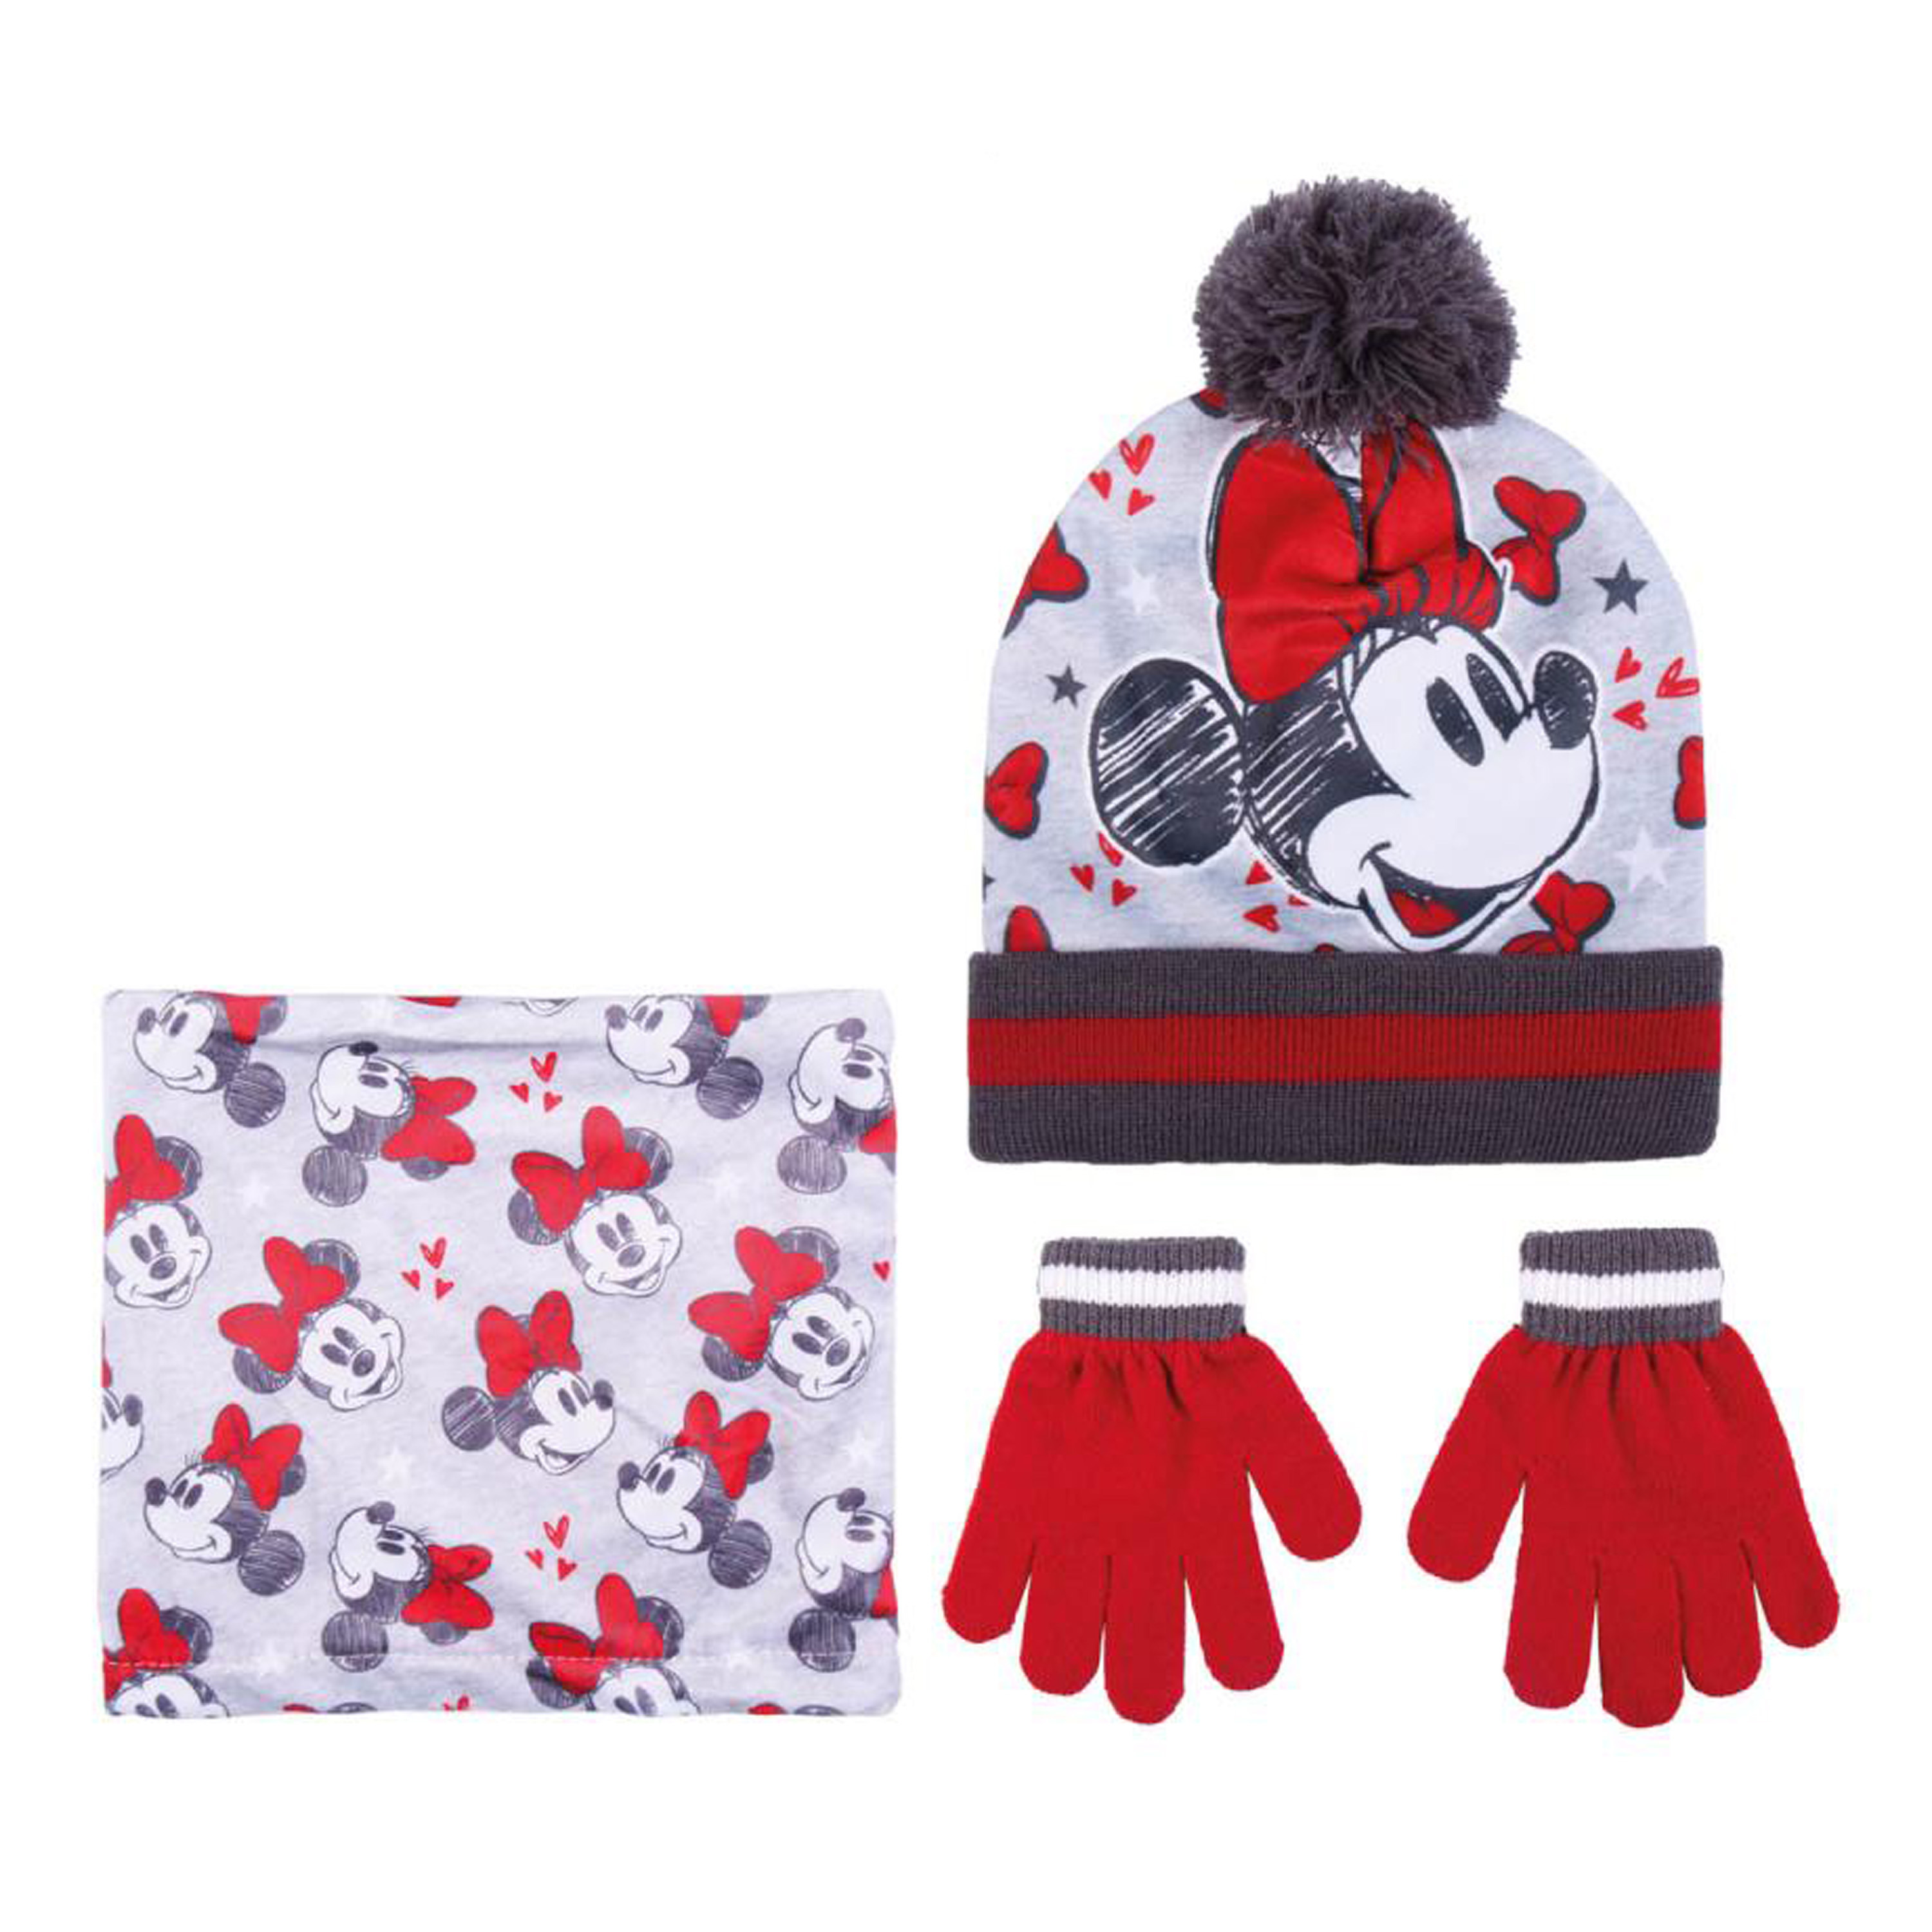 Disney Minnie Mouse 3-delig winterset muts-handschoenen-nek warmer rood-wit voor kinderen